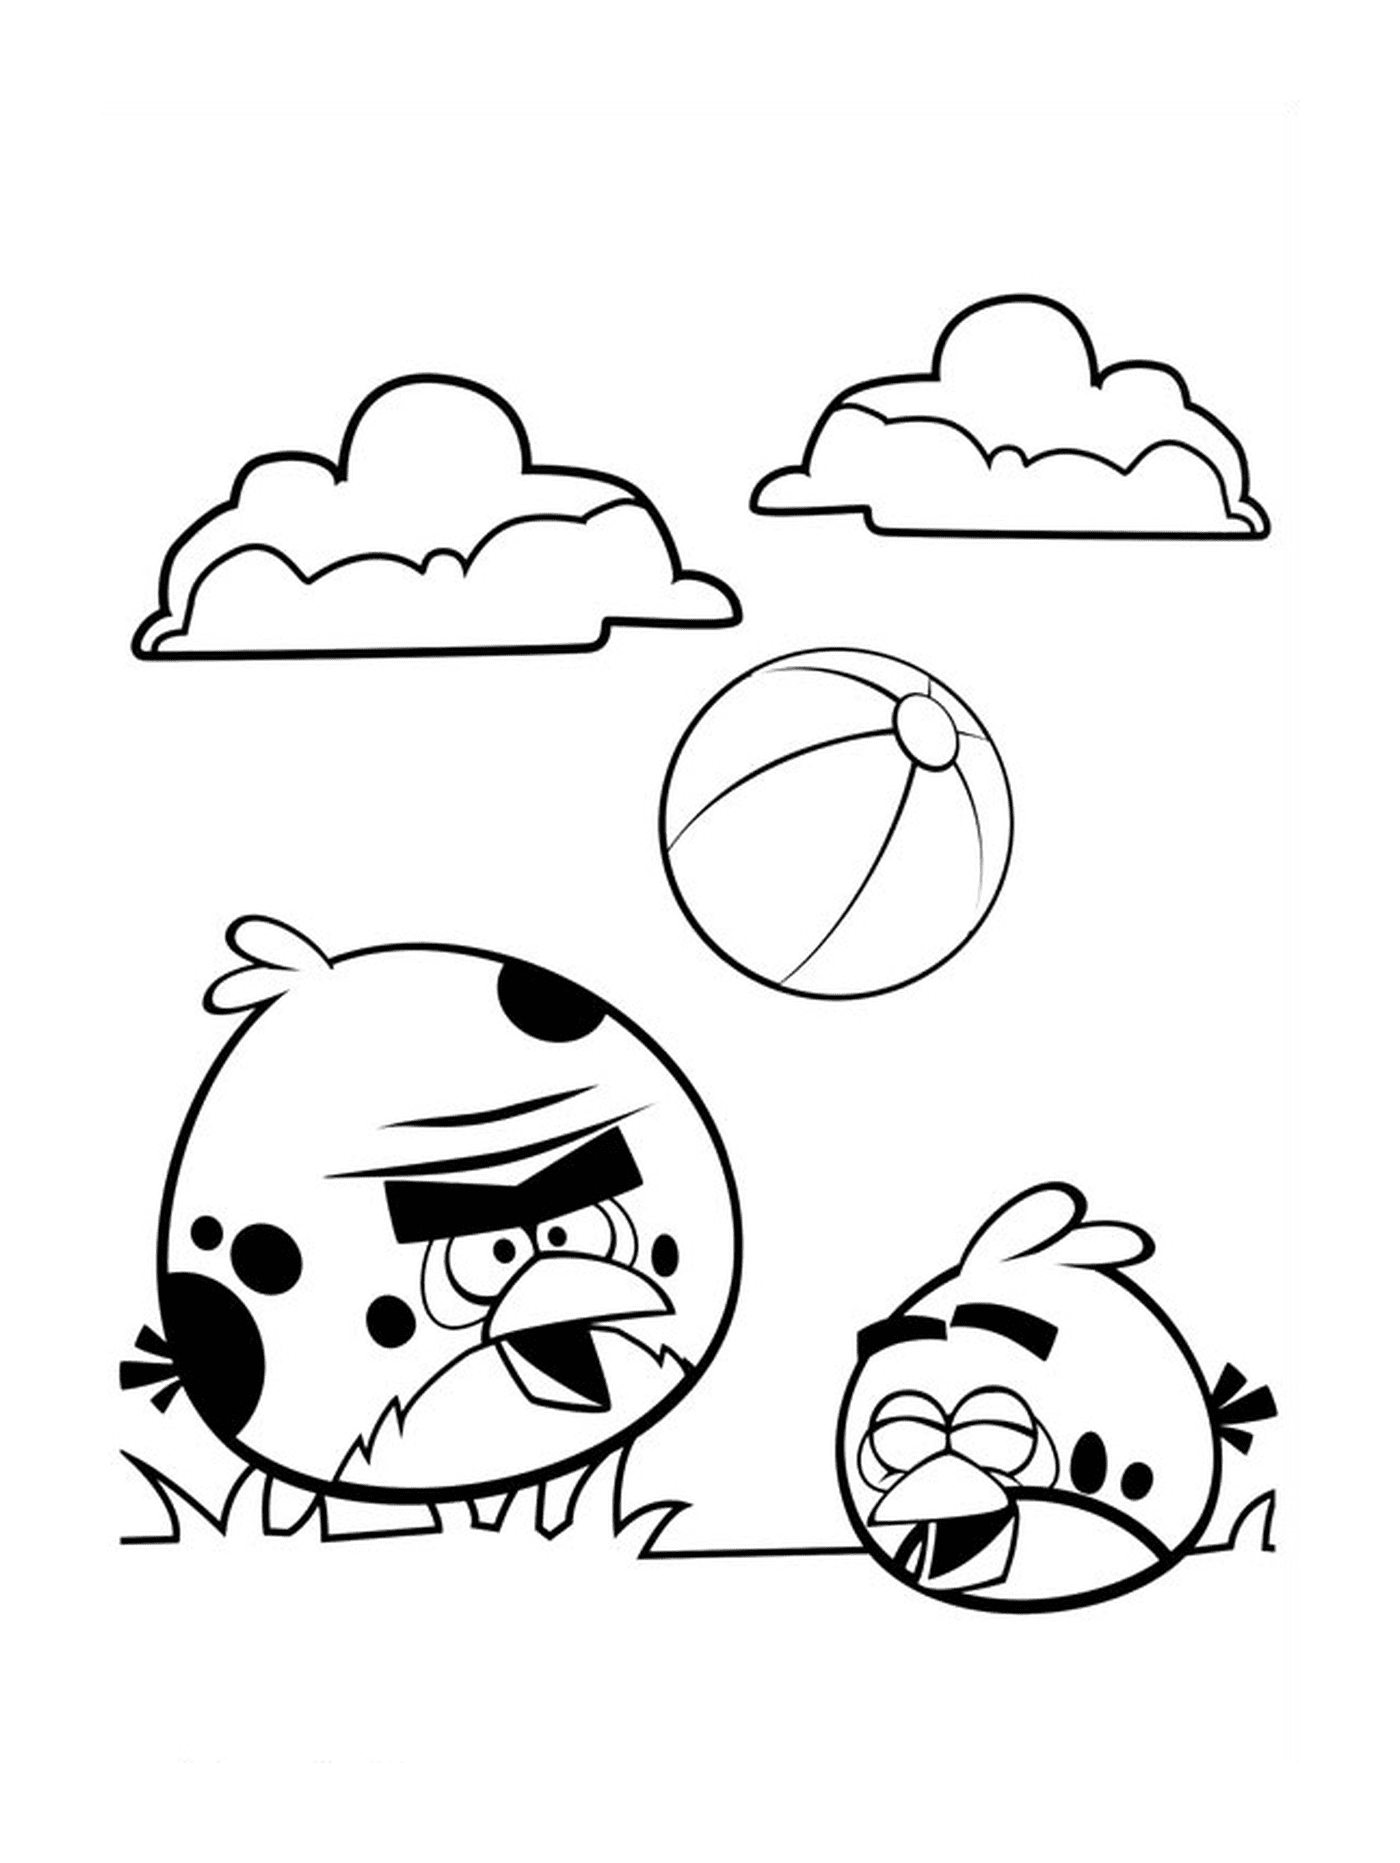  Los Angry Birds juegan al fútbol 